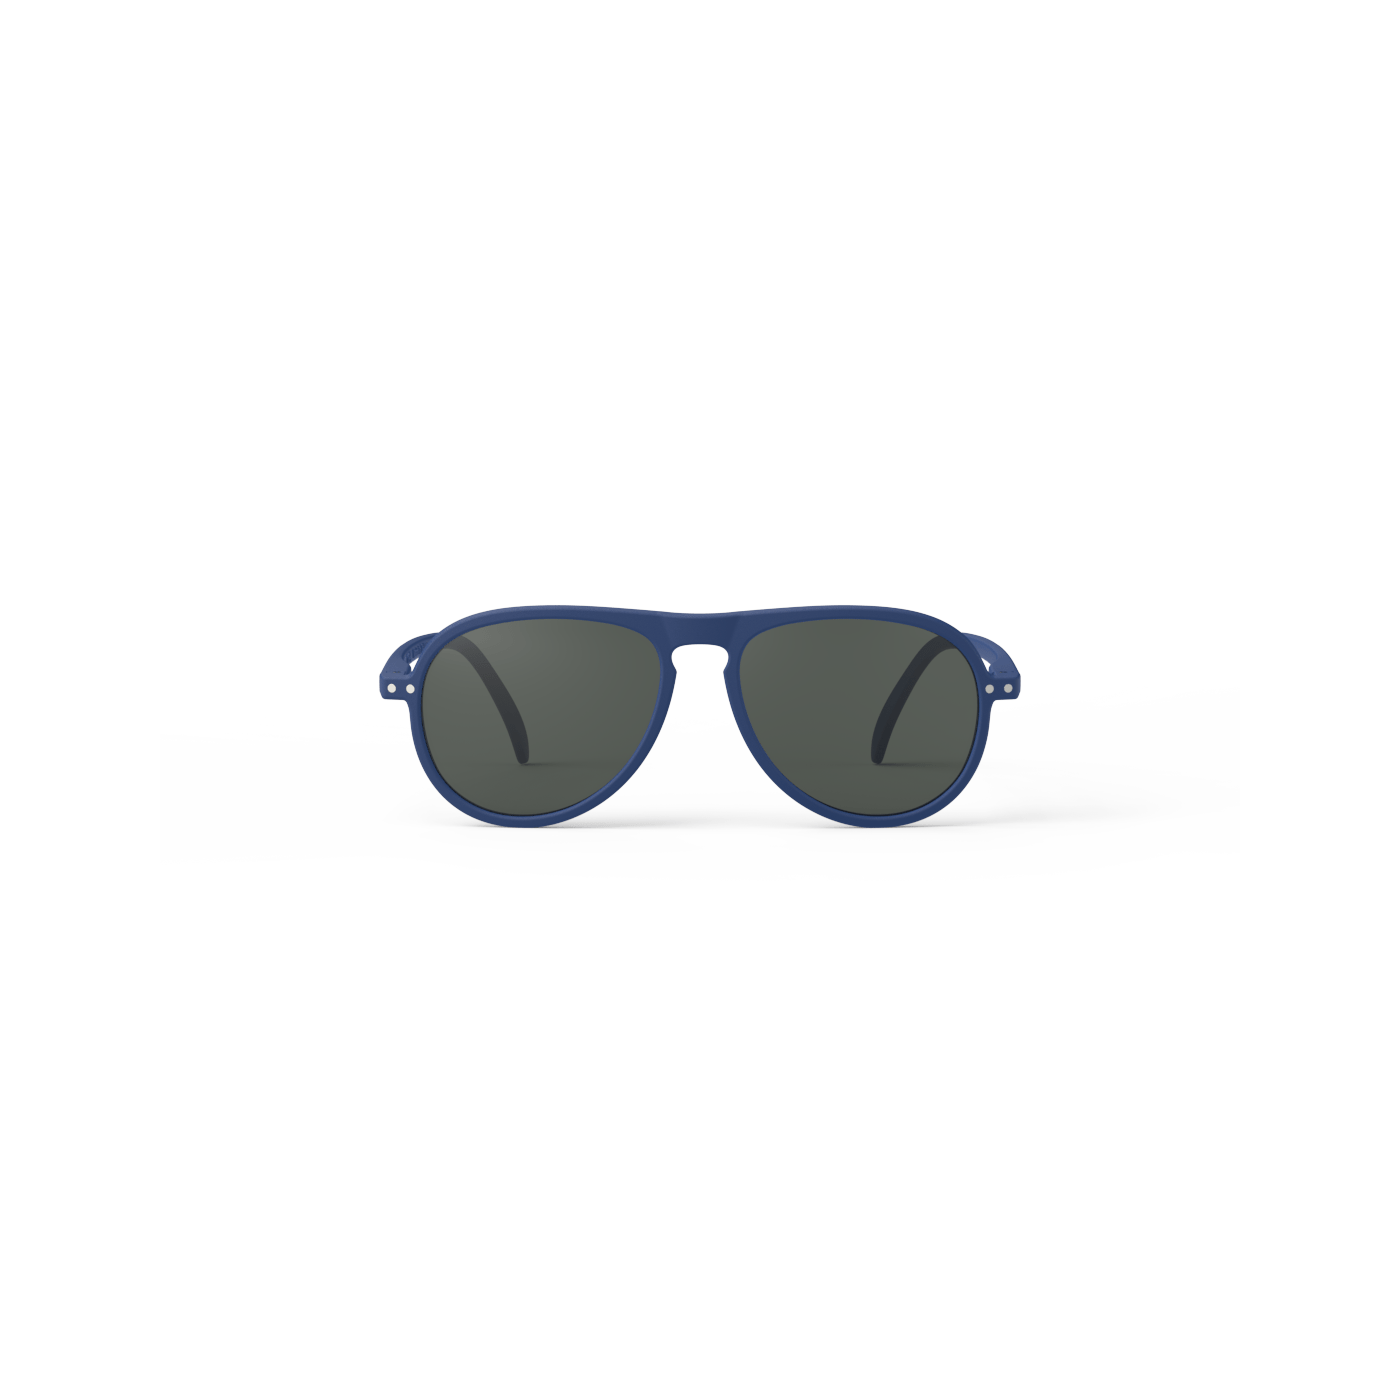 Pilote navy sunglasses frame I by Izipizi